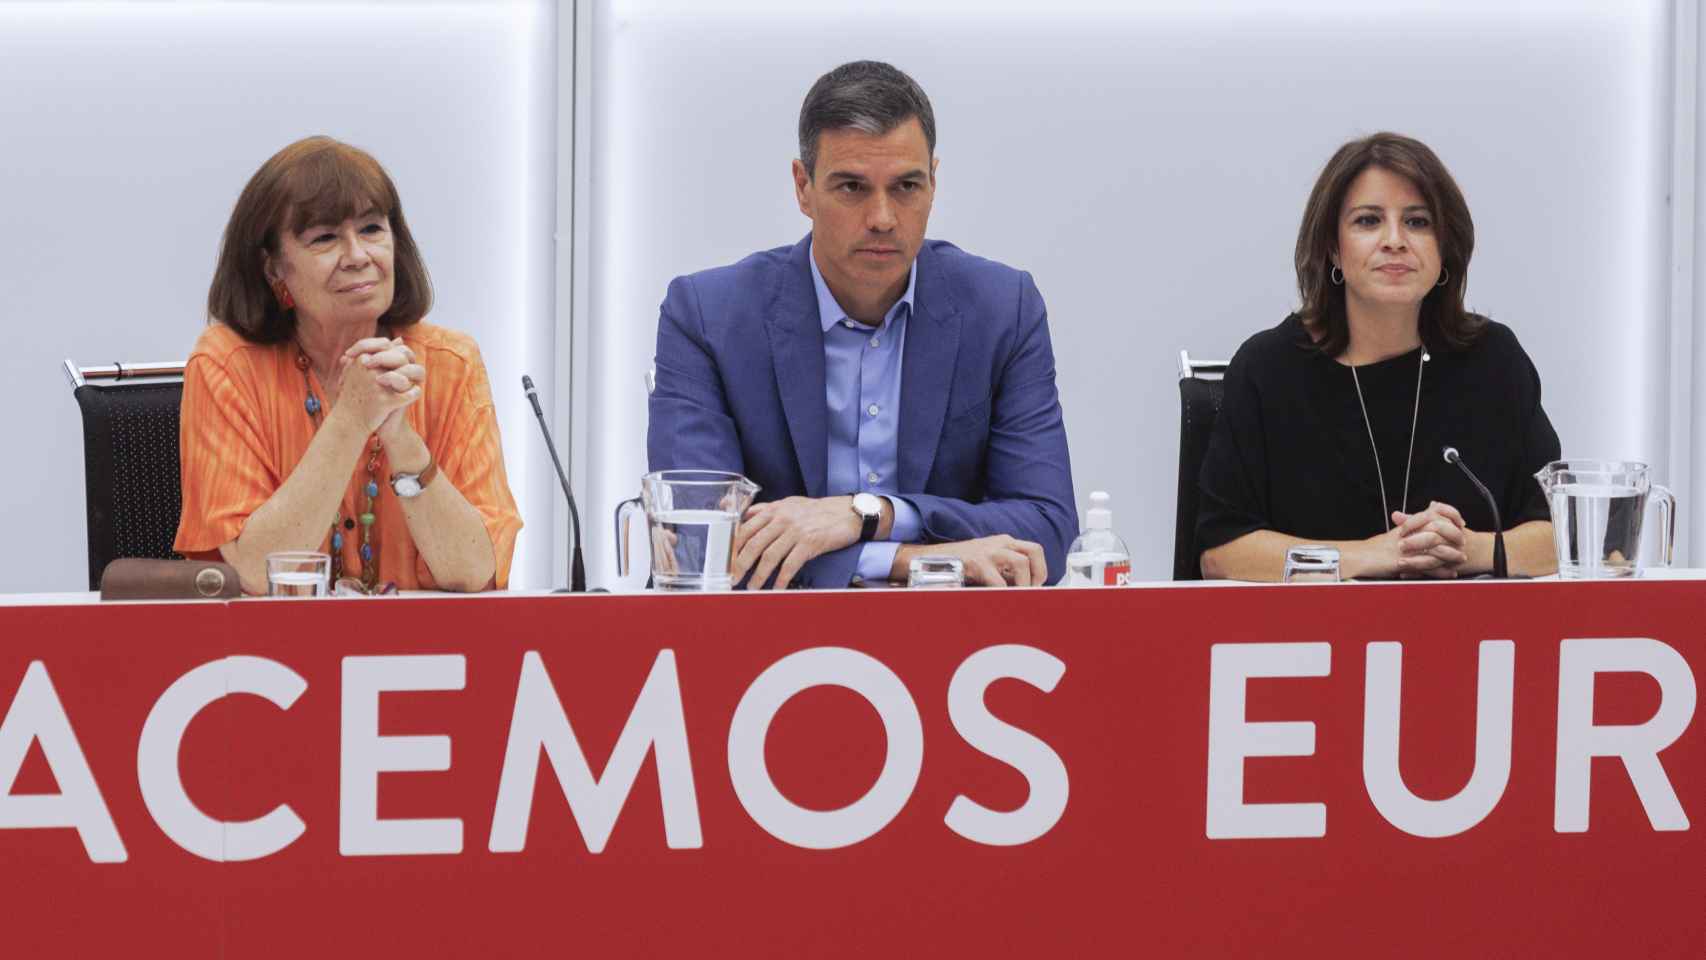 Pedro Sánchez preside con caras largas, la Ejecutiva del PSOE posterior al 19-J.